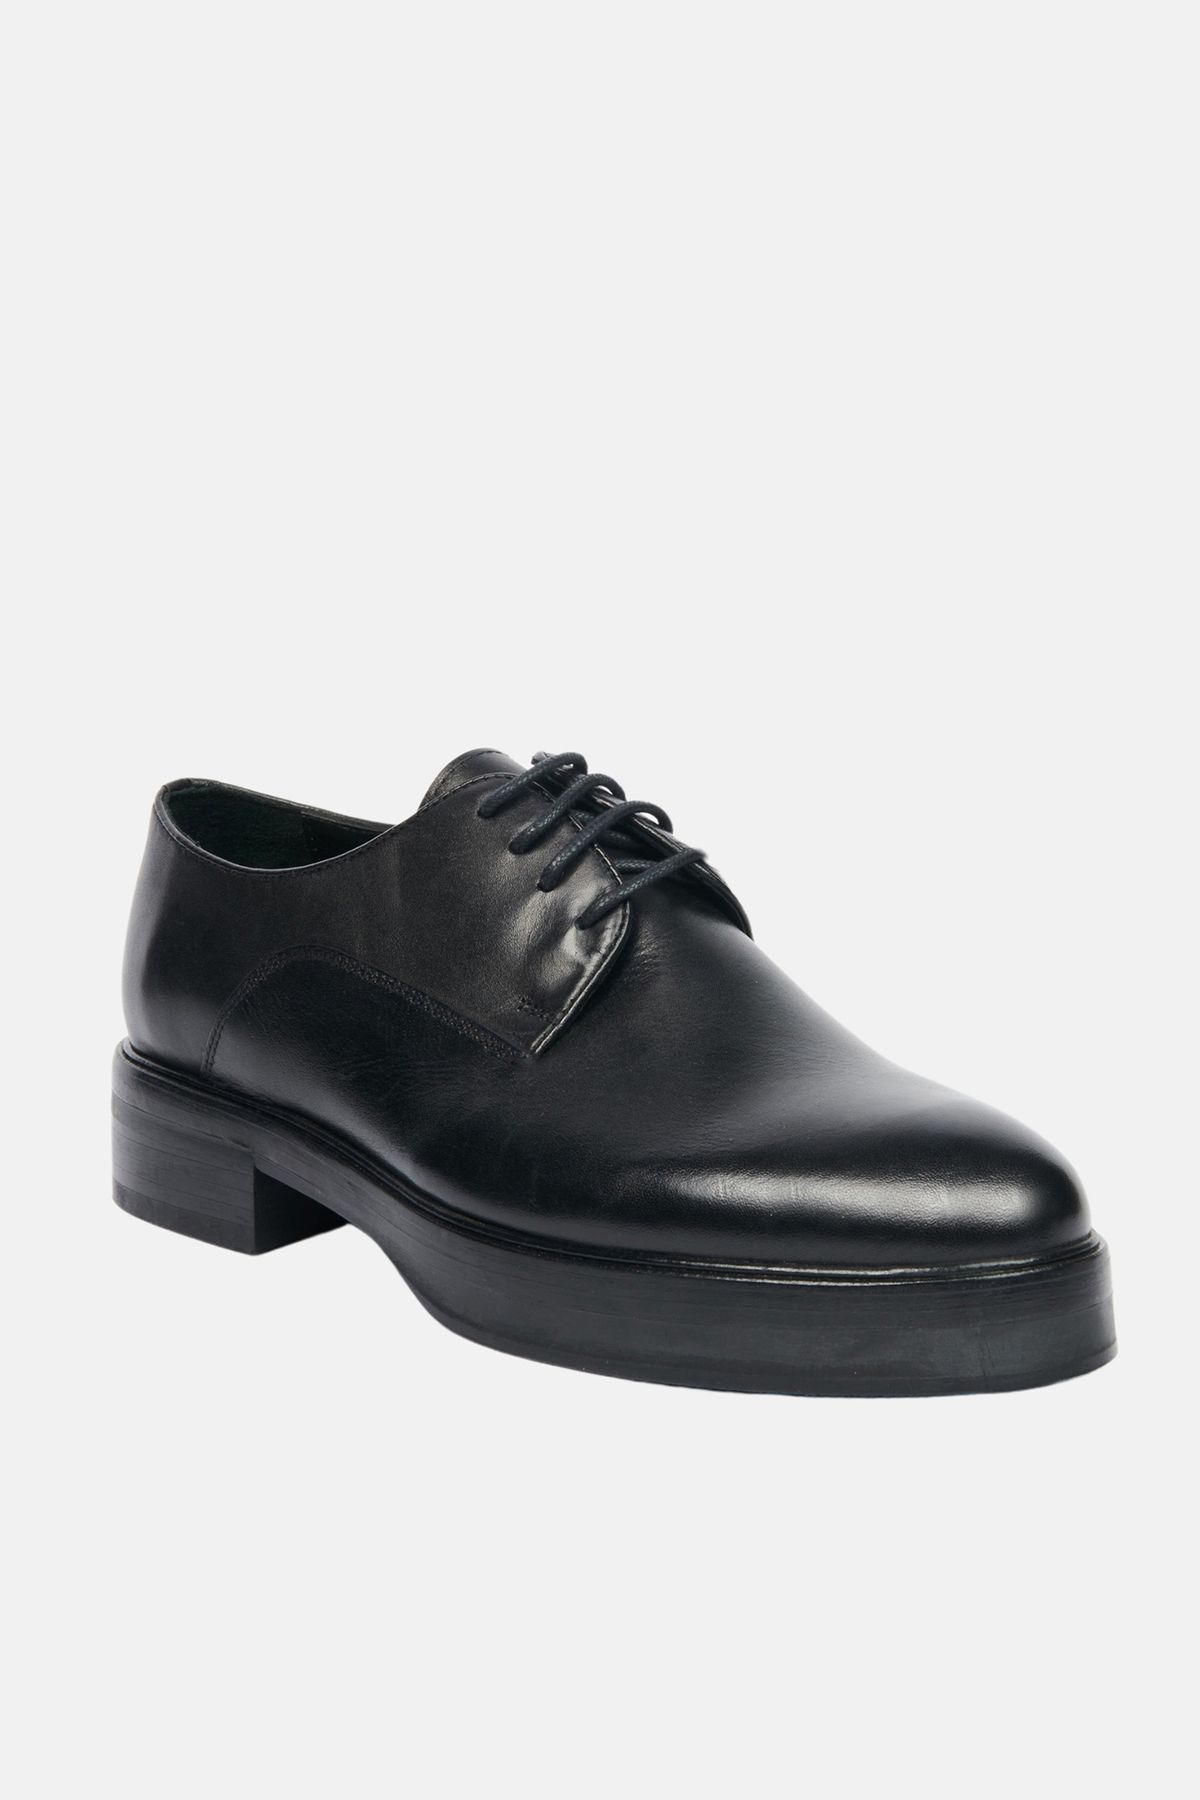 Avva Erkek Siyah %100 Deri Bağcıklı Kösele Klasik Ayakkabı A32Y8027